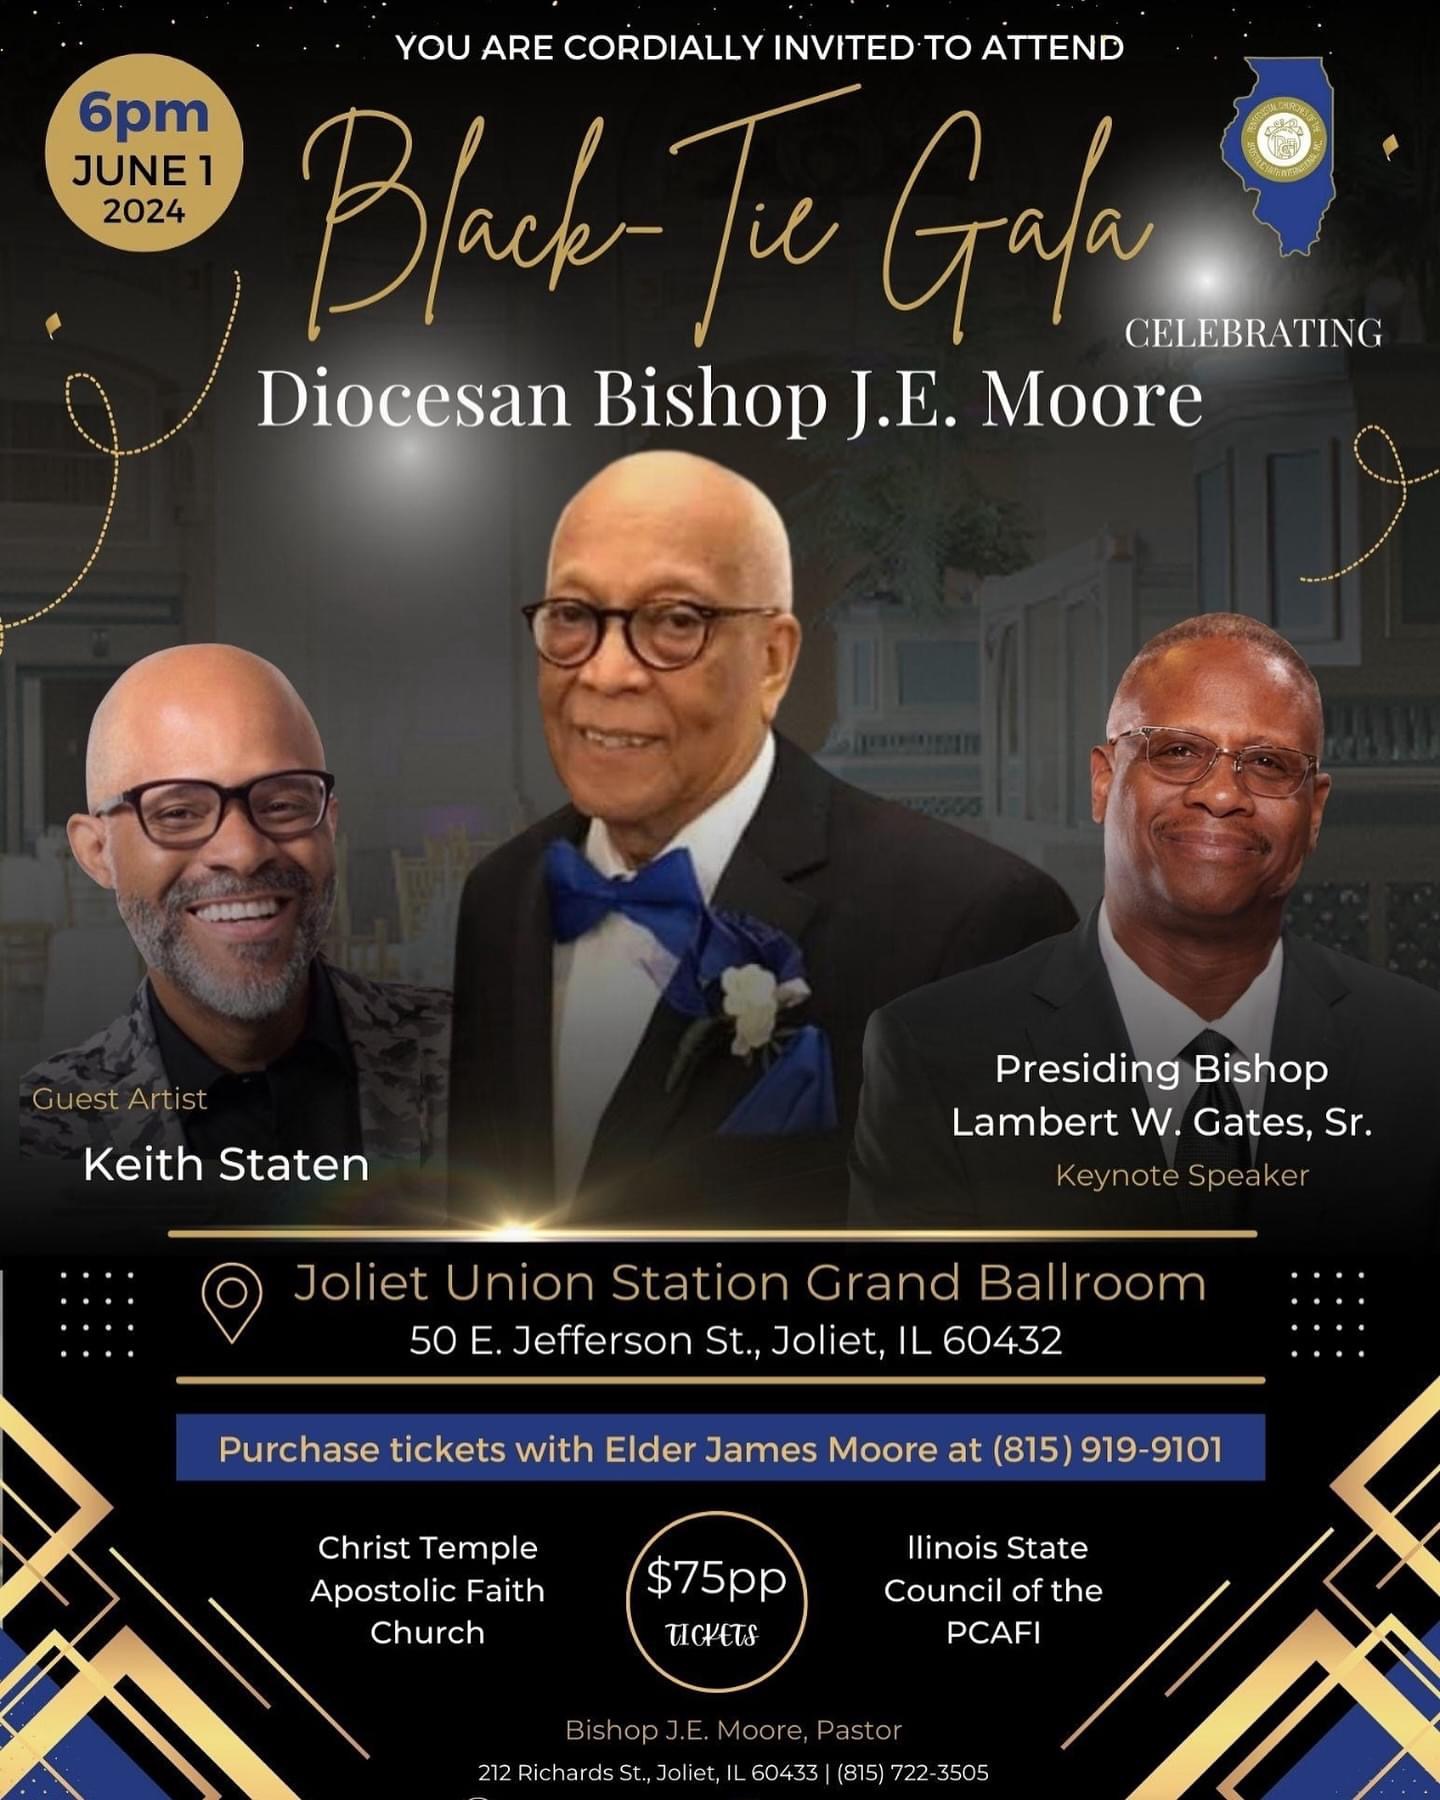 Black tie Gala for Bishop Moore